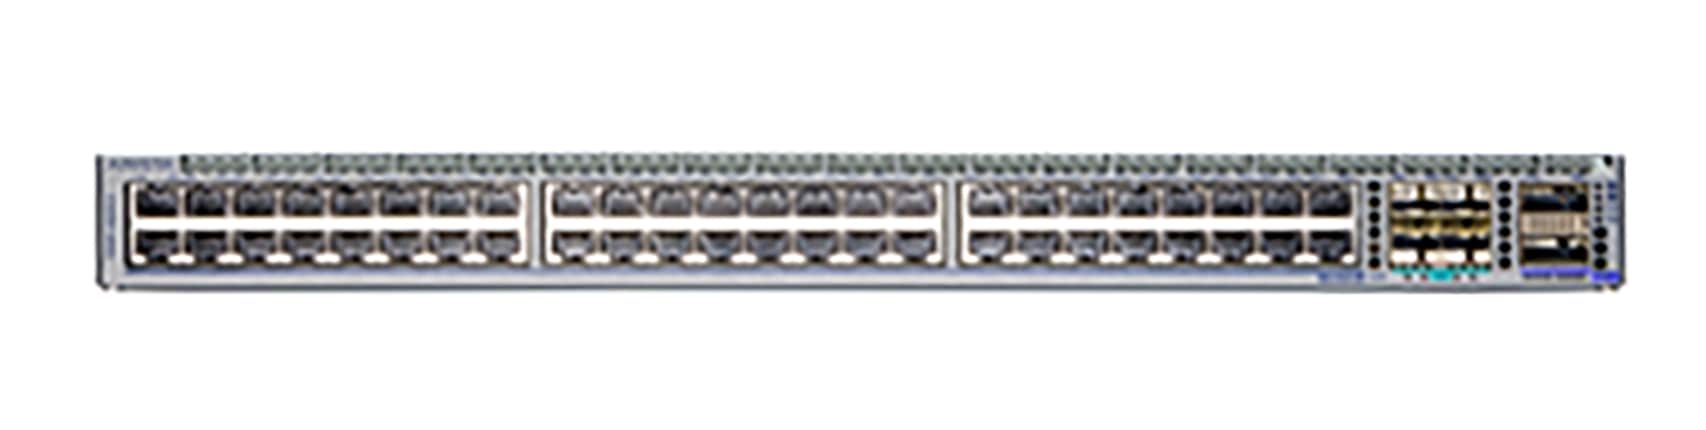 Arista 720XP 48x10GBase-T 90W PoE 4x25G SFP28 2x100G QSFP Ethernet Switch